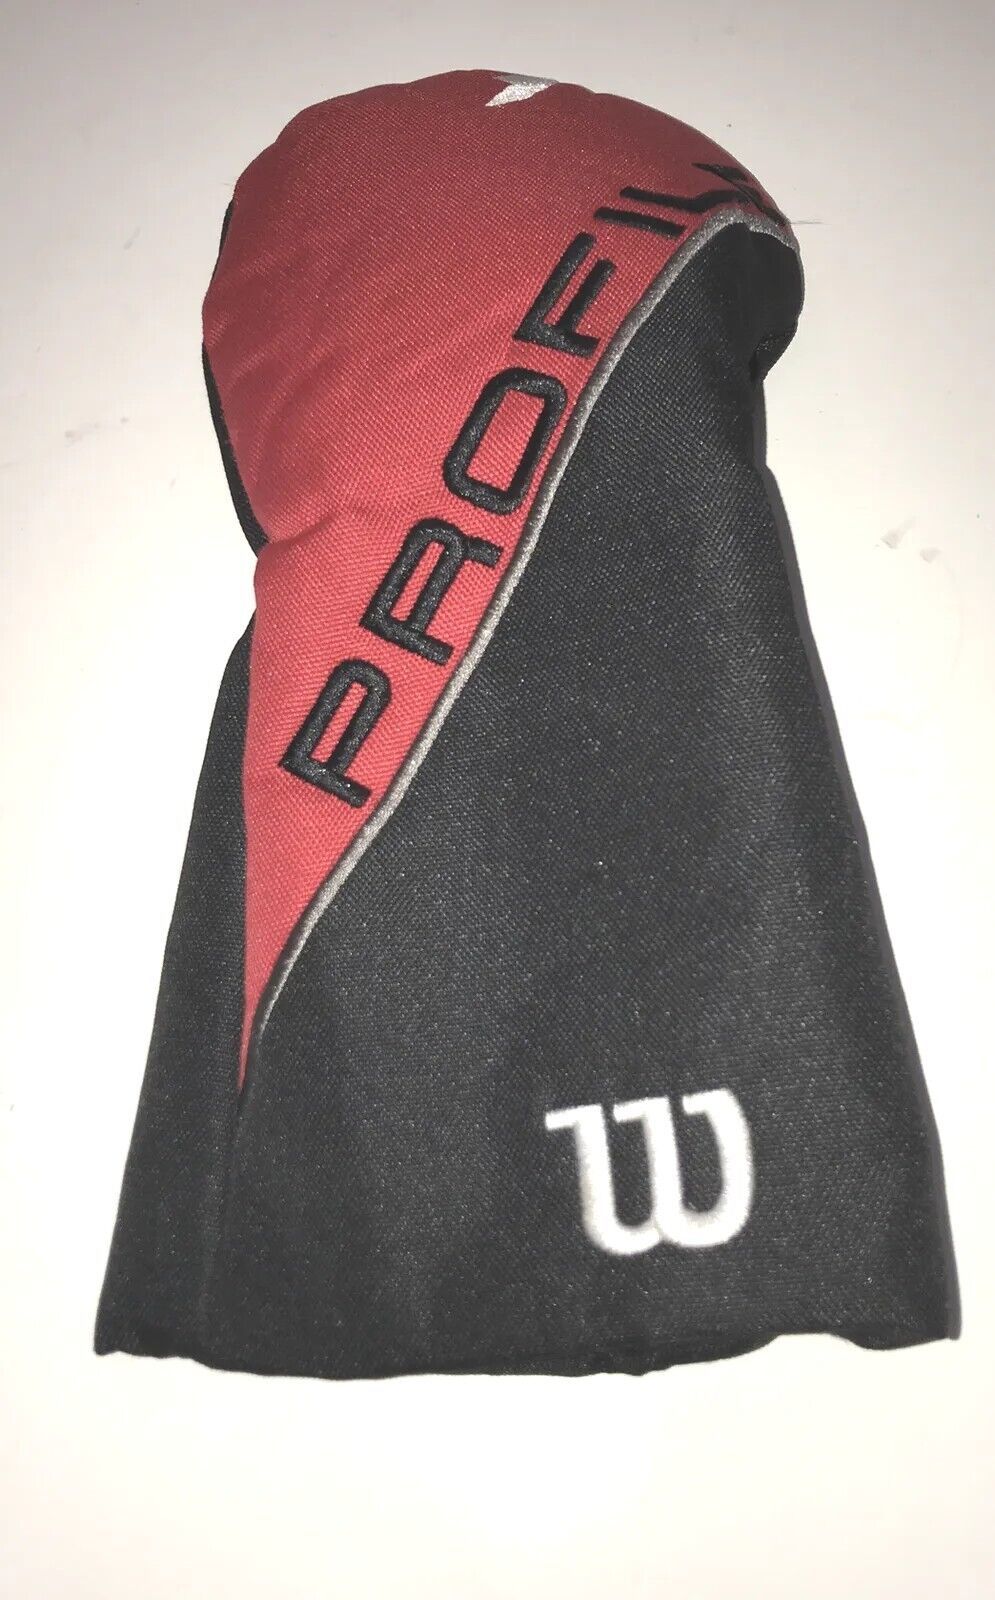 Wilson Profile 1 Driver Headcover Red Black EUC - $10.57